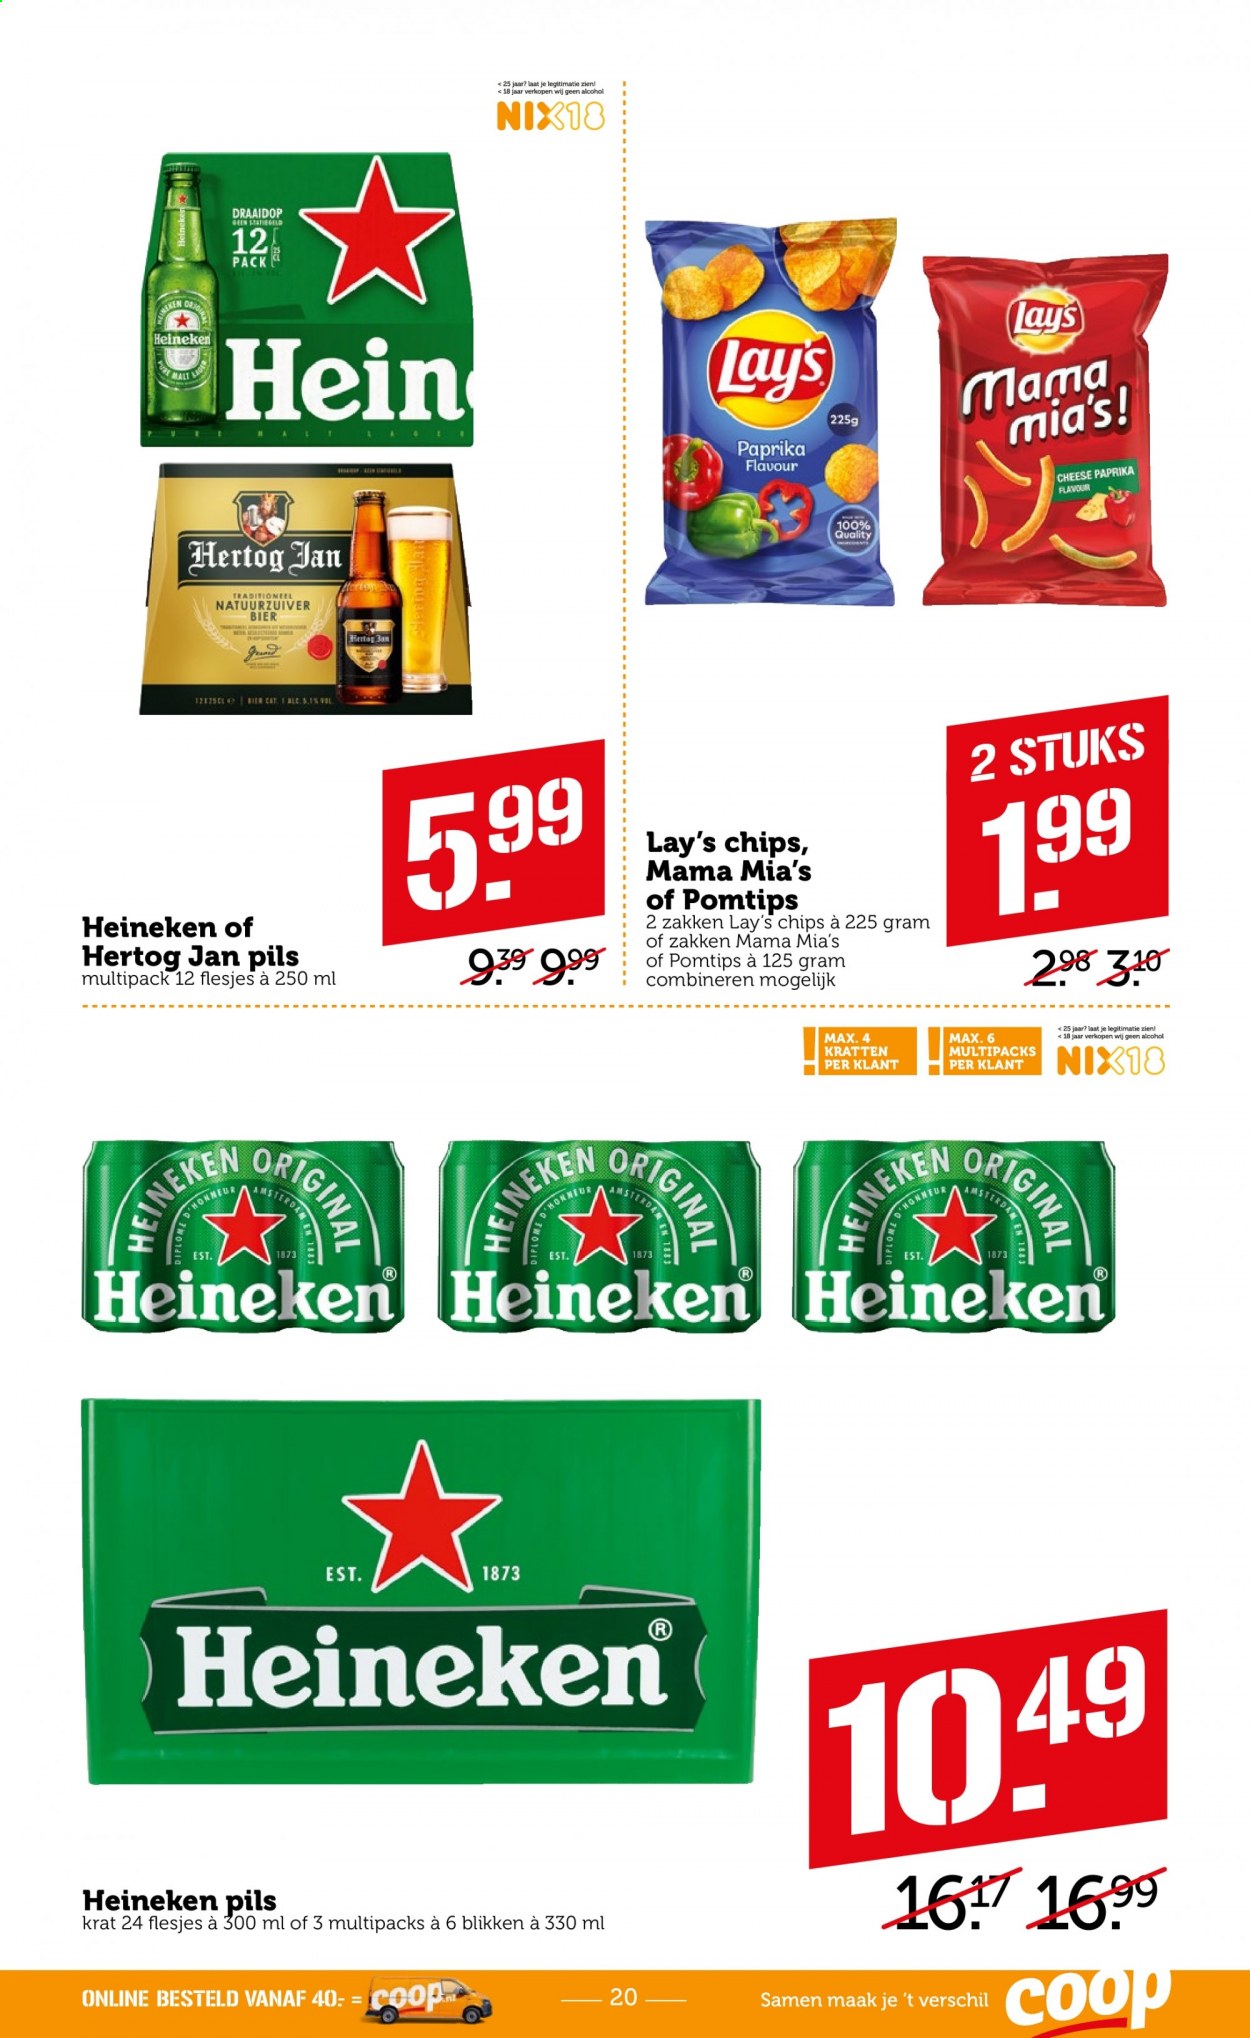 thumbnail - Coop-aanbieding - 11-1-2021 - 17-1-2021 -  producten in de aanbieding - Heineken, Hertog Jan, bier, chips. Pagina 20.